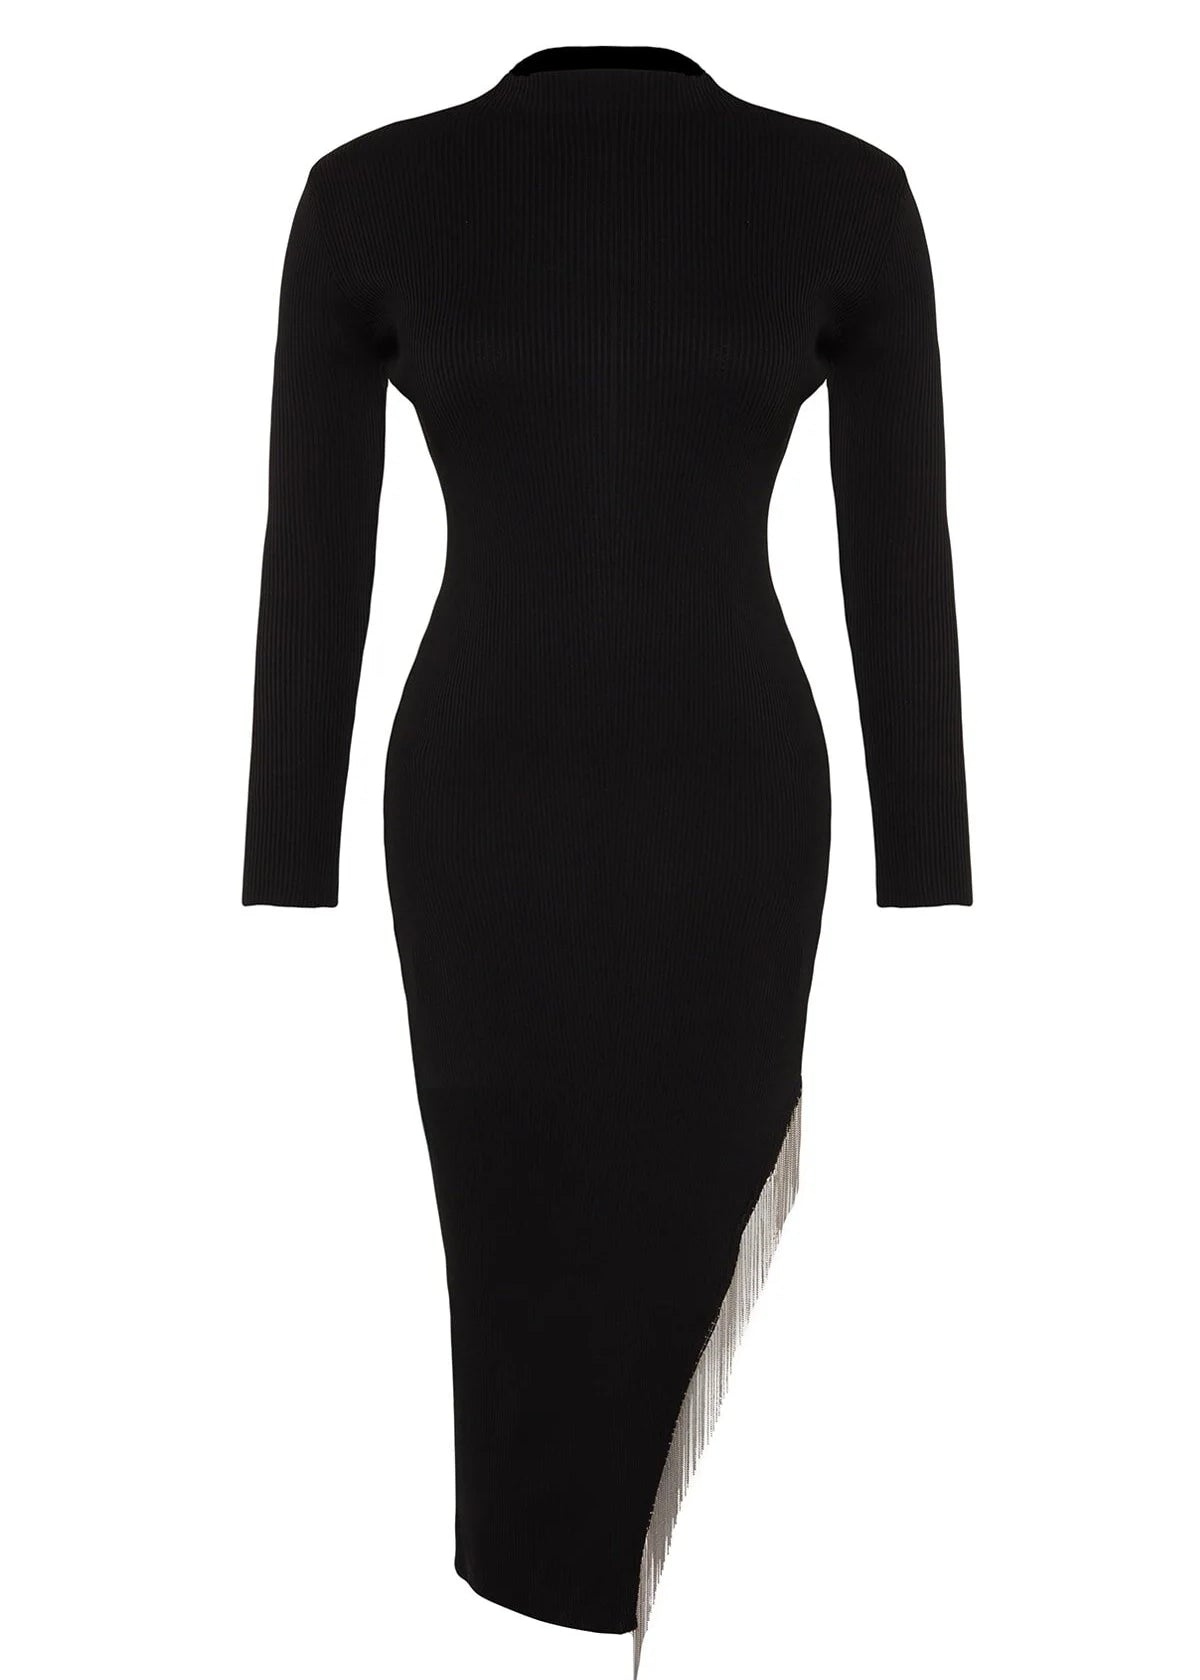 Plus Size Asymmetric Cut Accessory Detailed Dress - Black